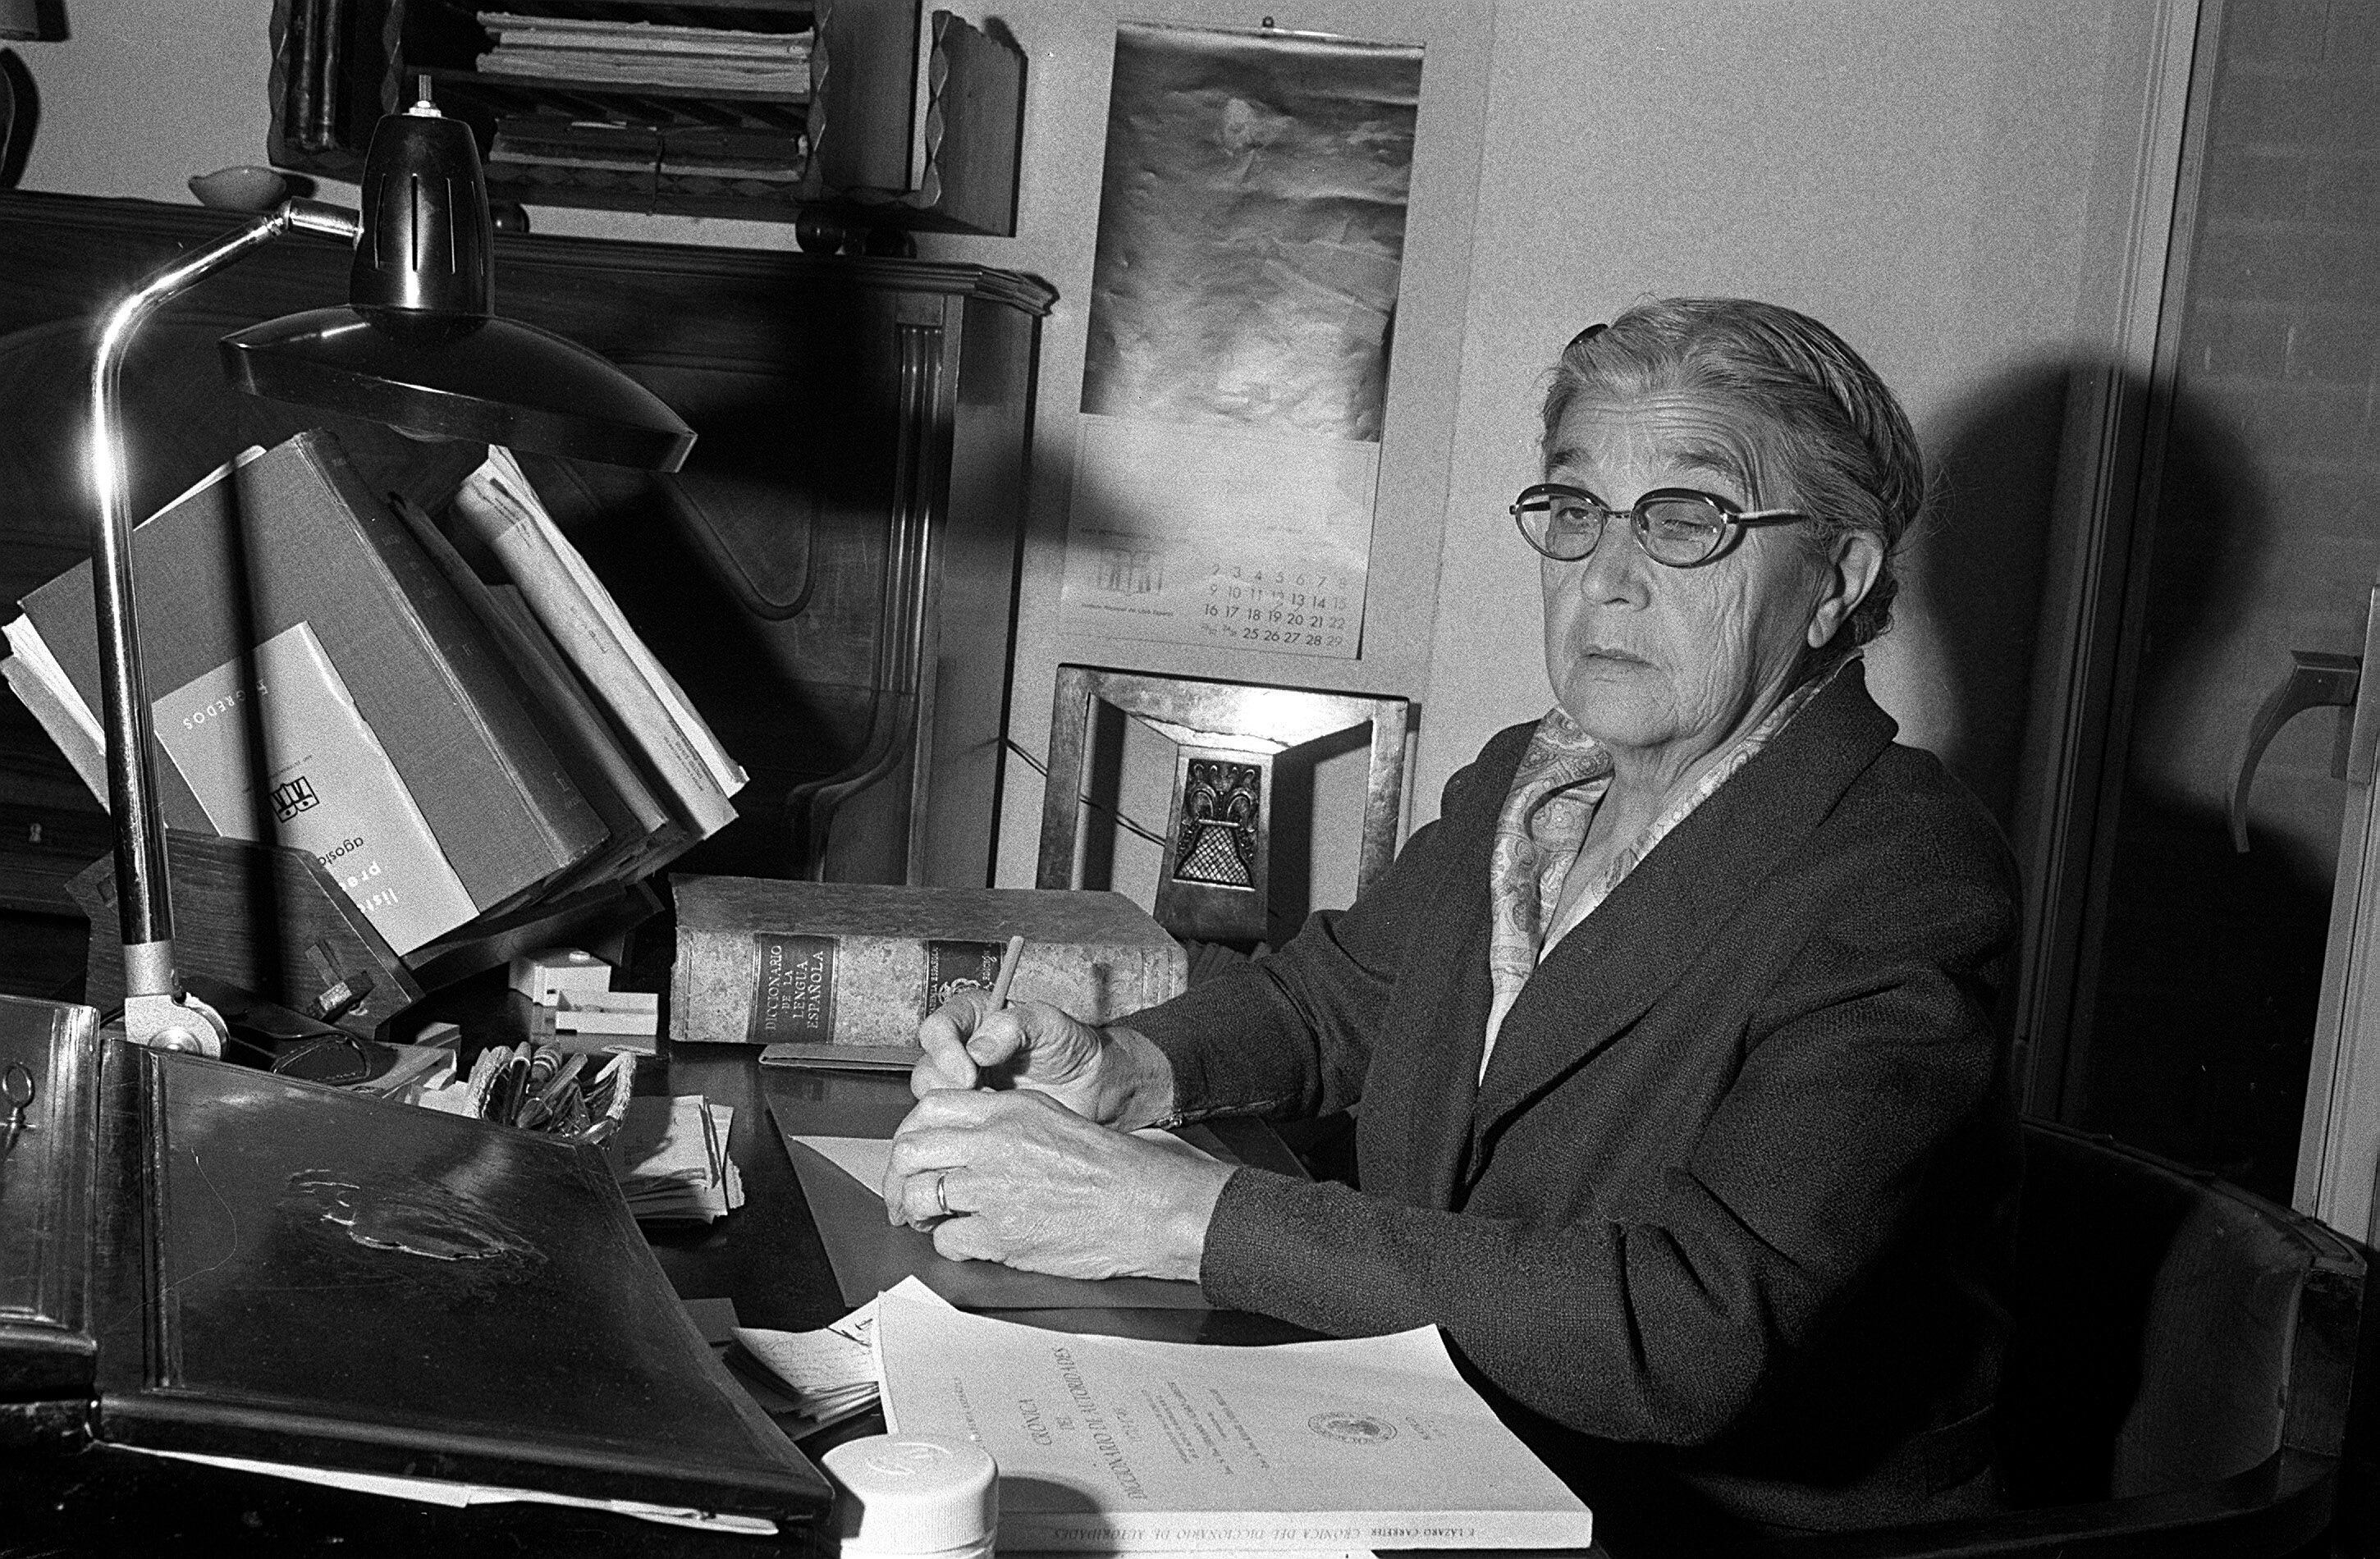 La Escritora y lexicógrafa, María Moliner, aparece en su despacho mientras elabora su "Diccionario de uso del español", es recordada este lunes en el VI Día de las Escritoras. EFE